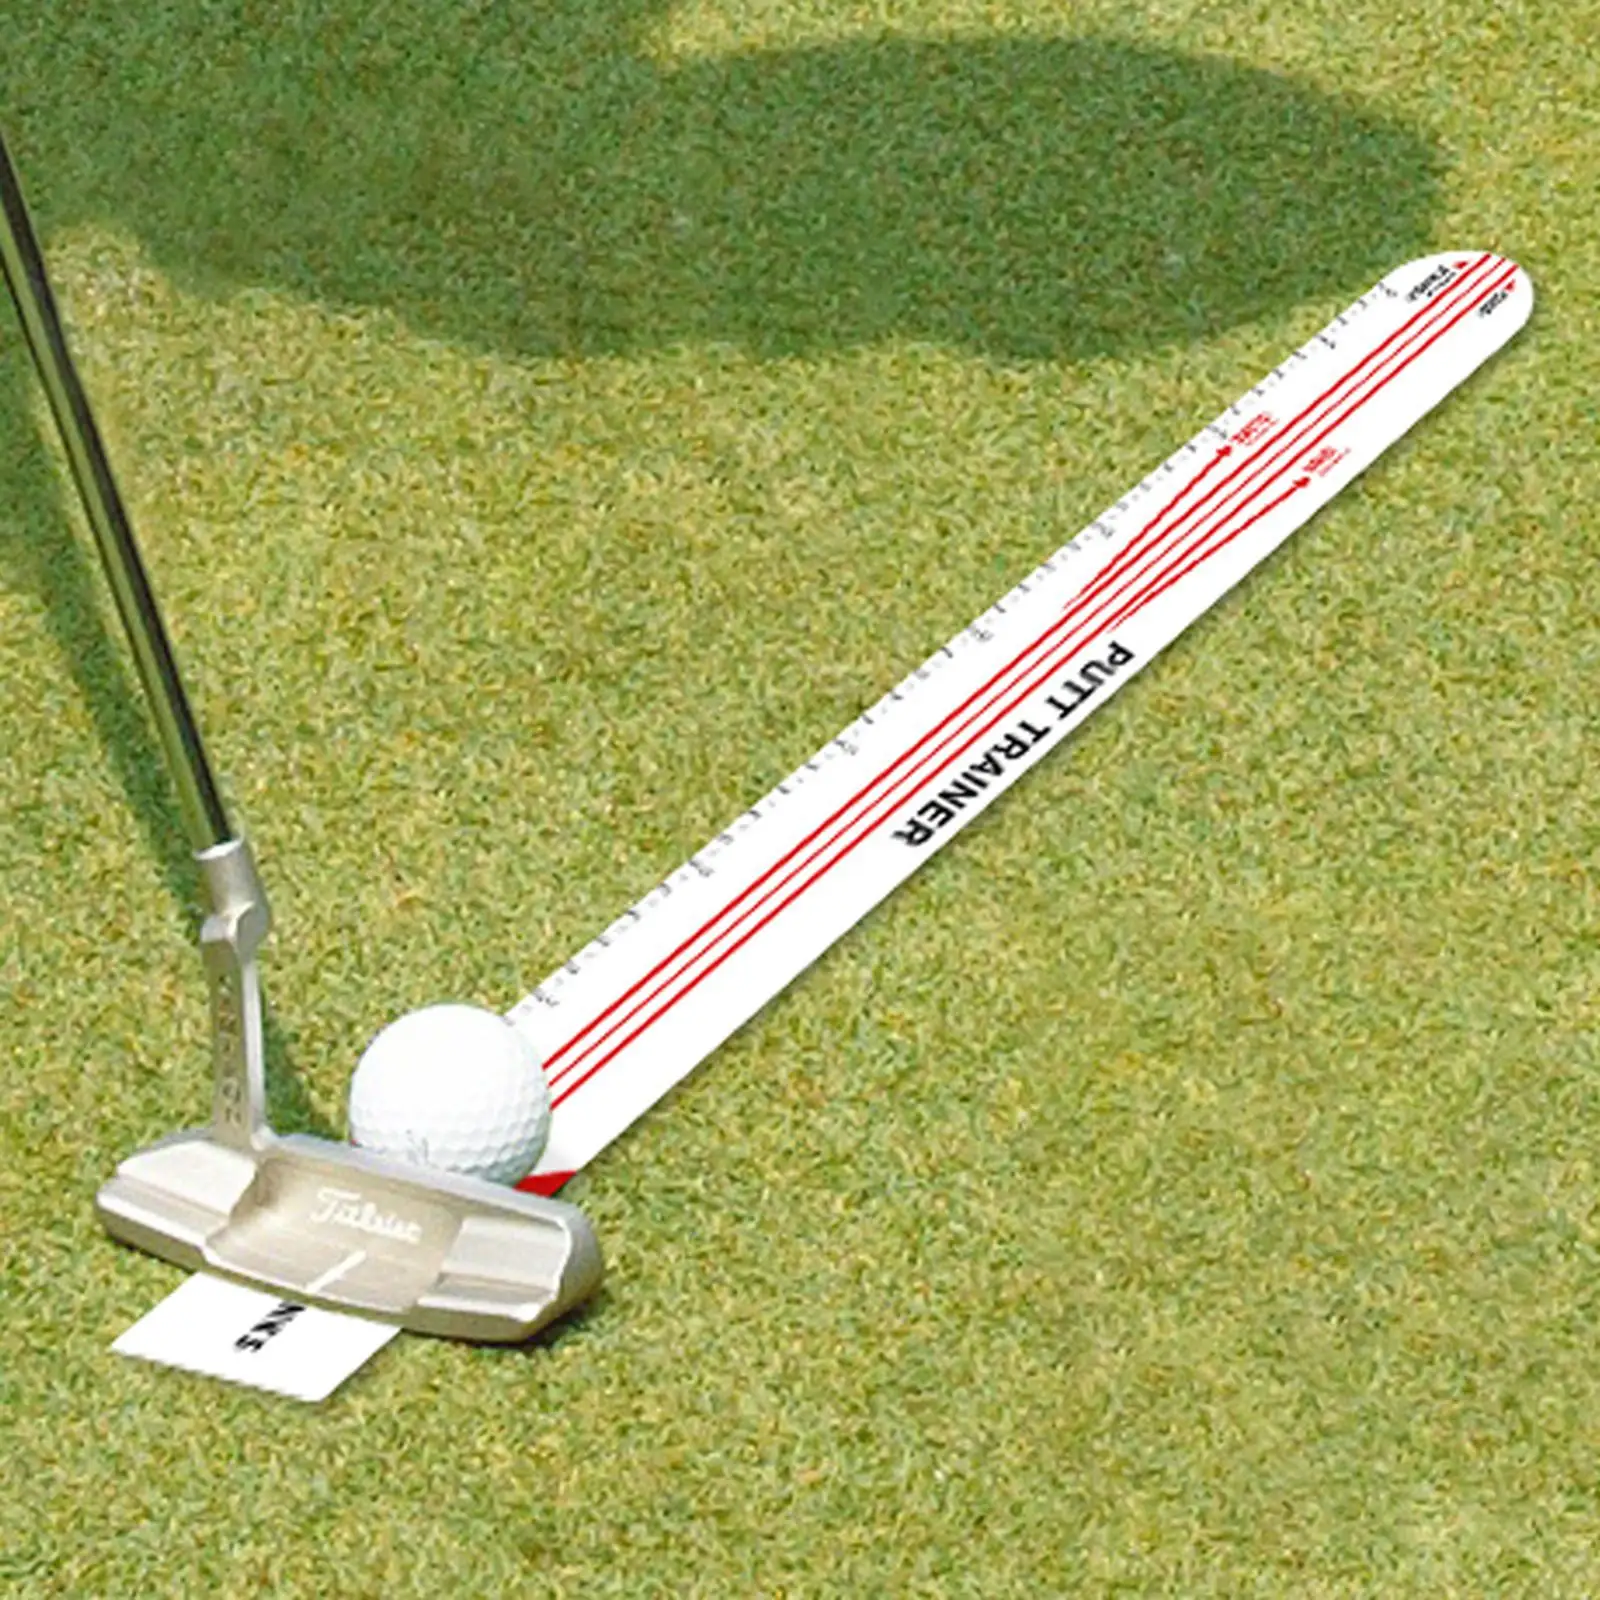 Golf Putt Check Putt Trainer Straight Ruler Training Equipment for Indoor for Beginner